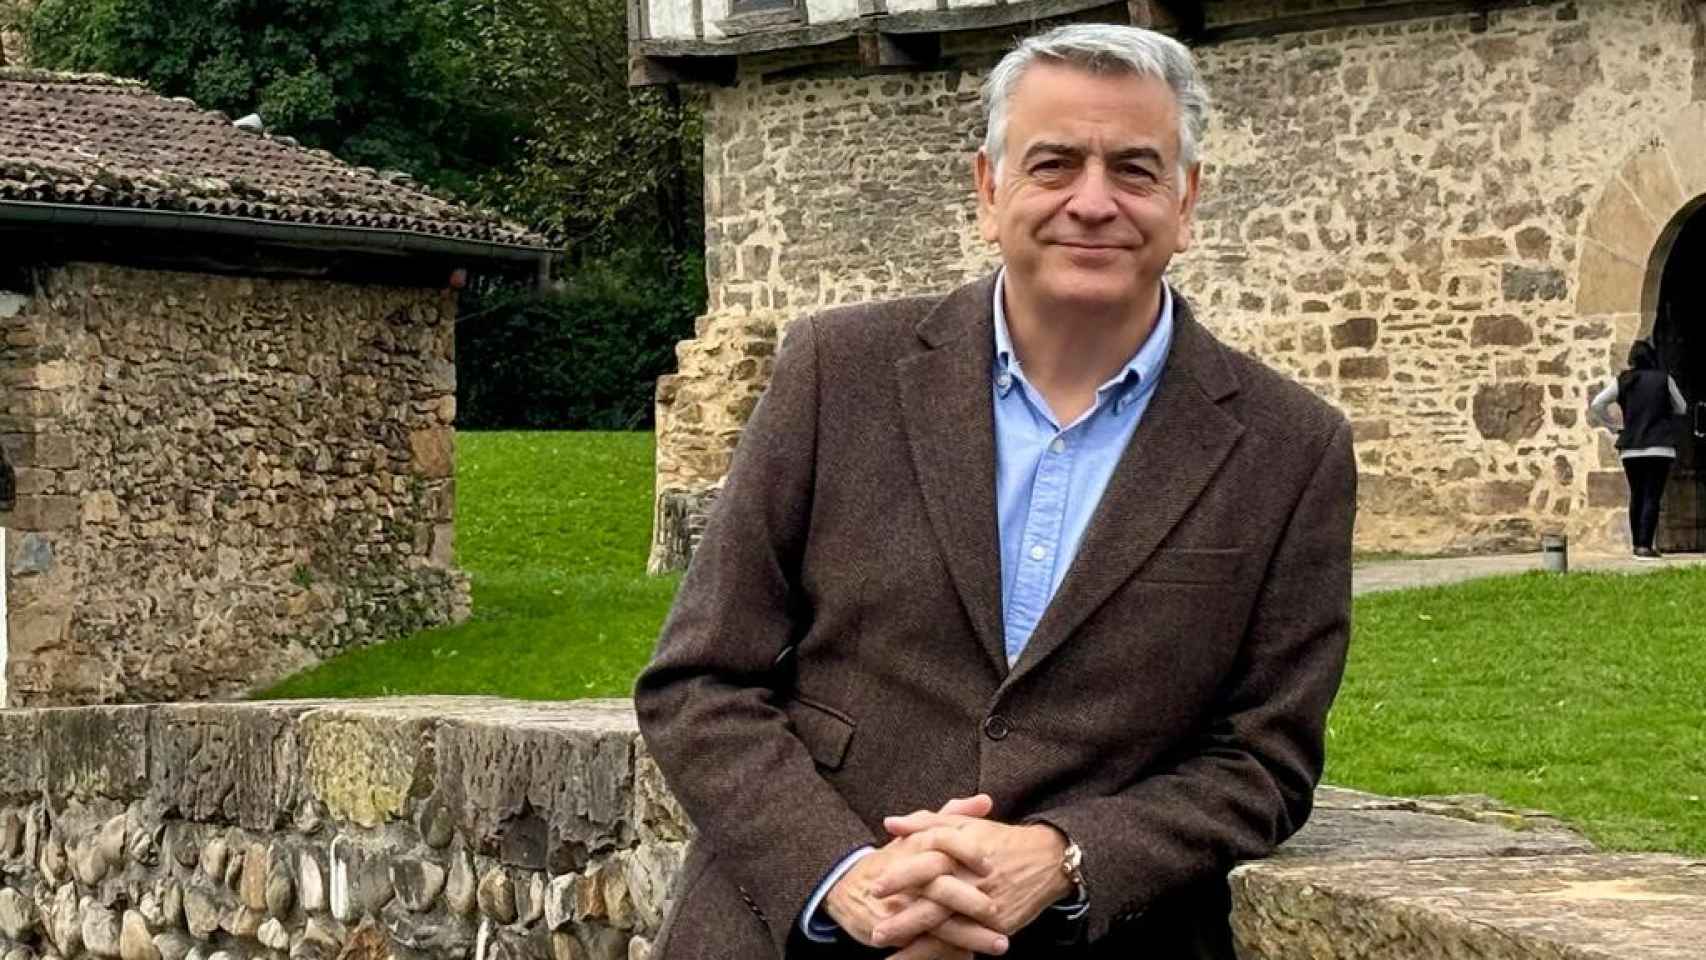 Javier de Andrés será elegido este sábado nuevo presidente del PP Vasco / PP Vasco